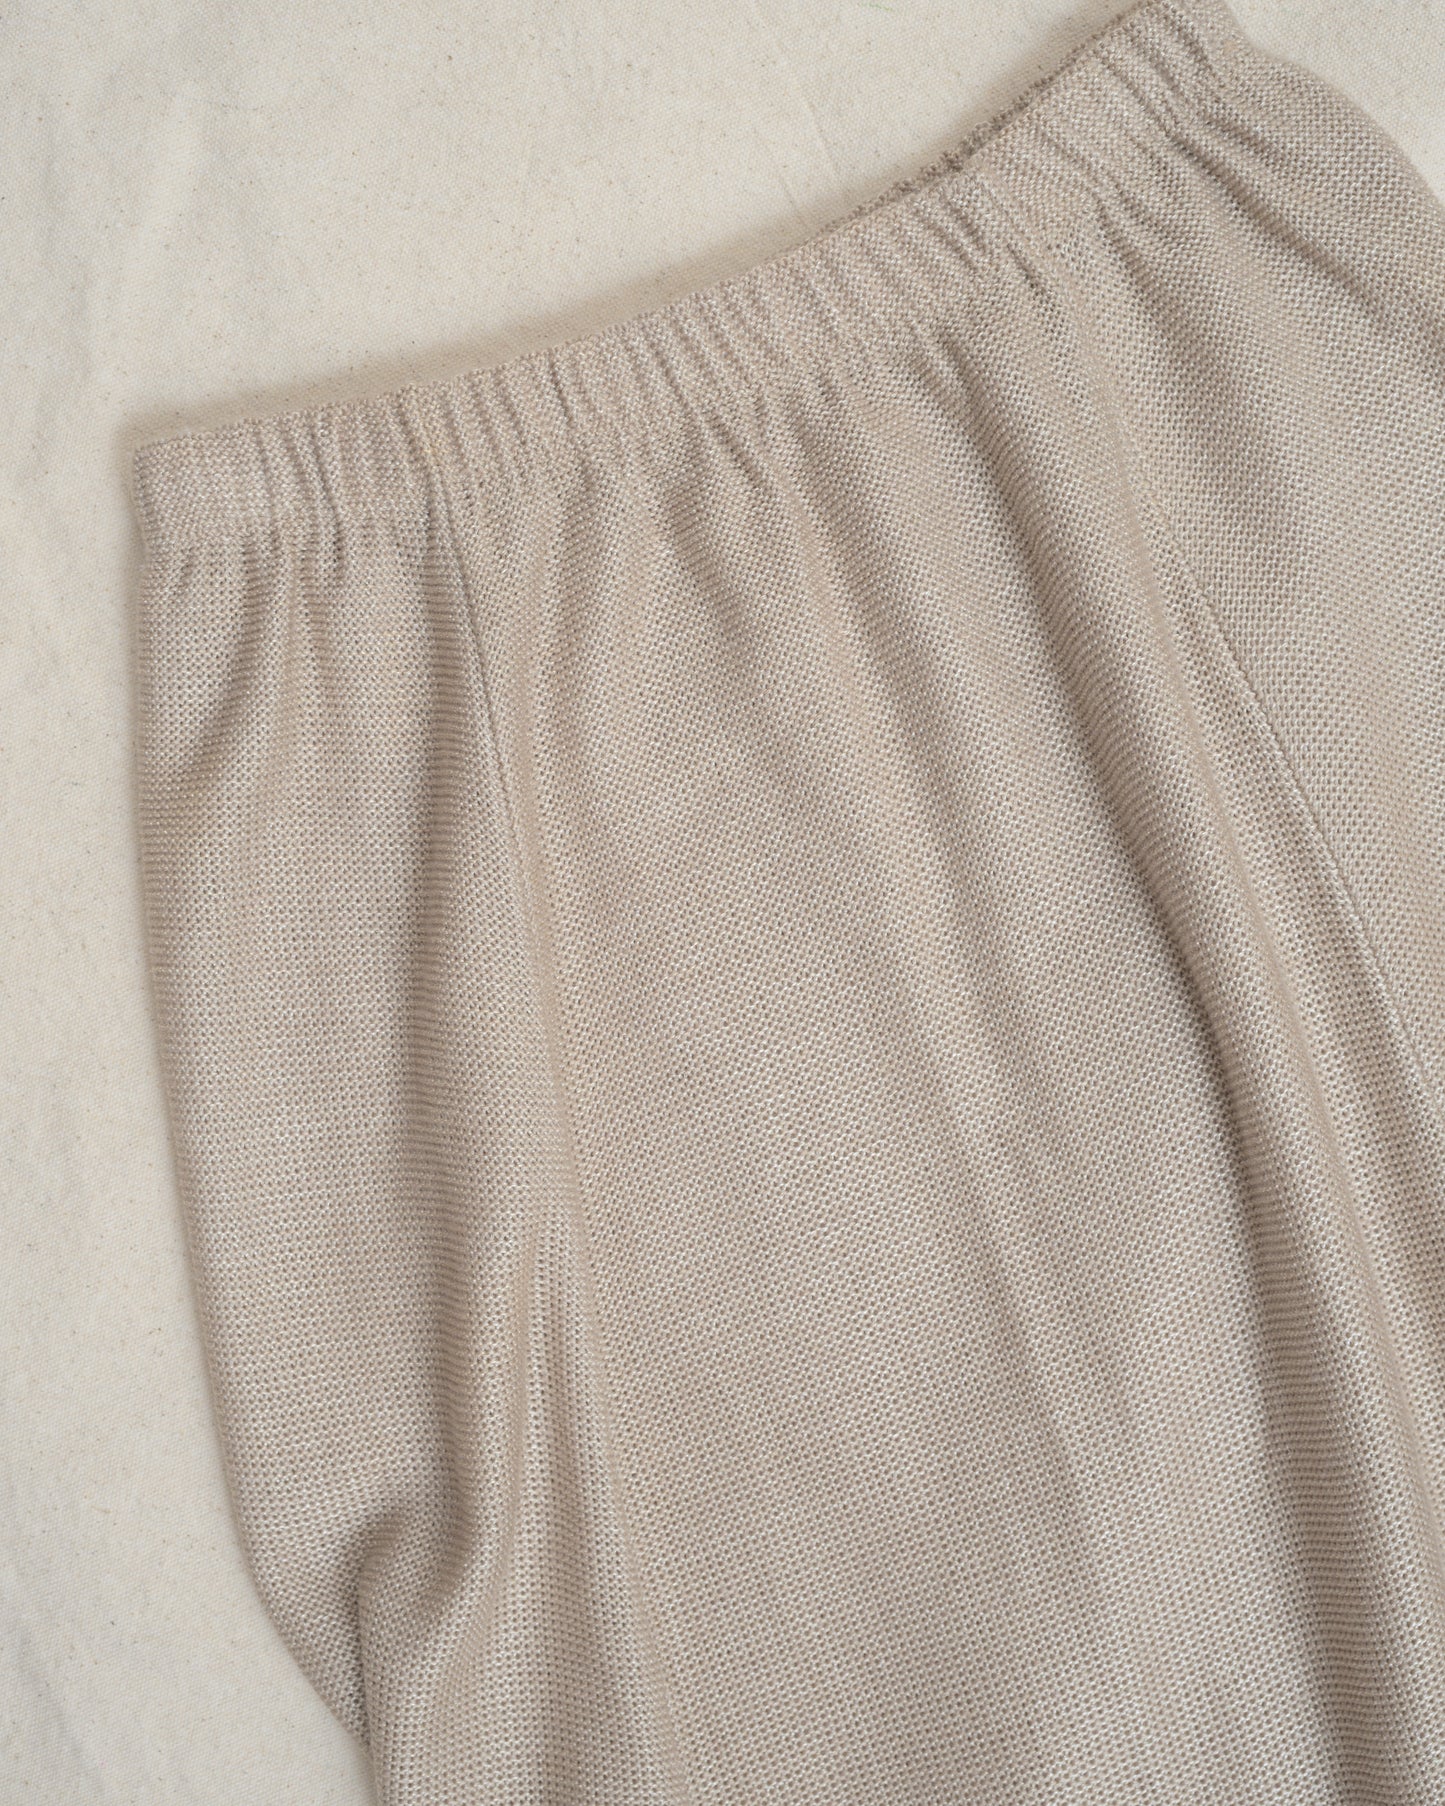 Vintage Beige Knit Skirt (S/M)